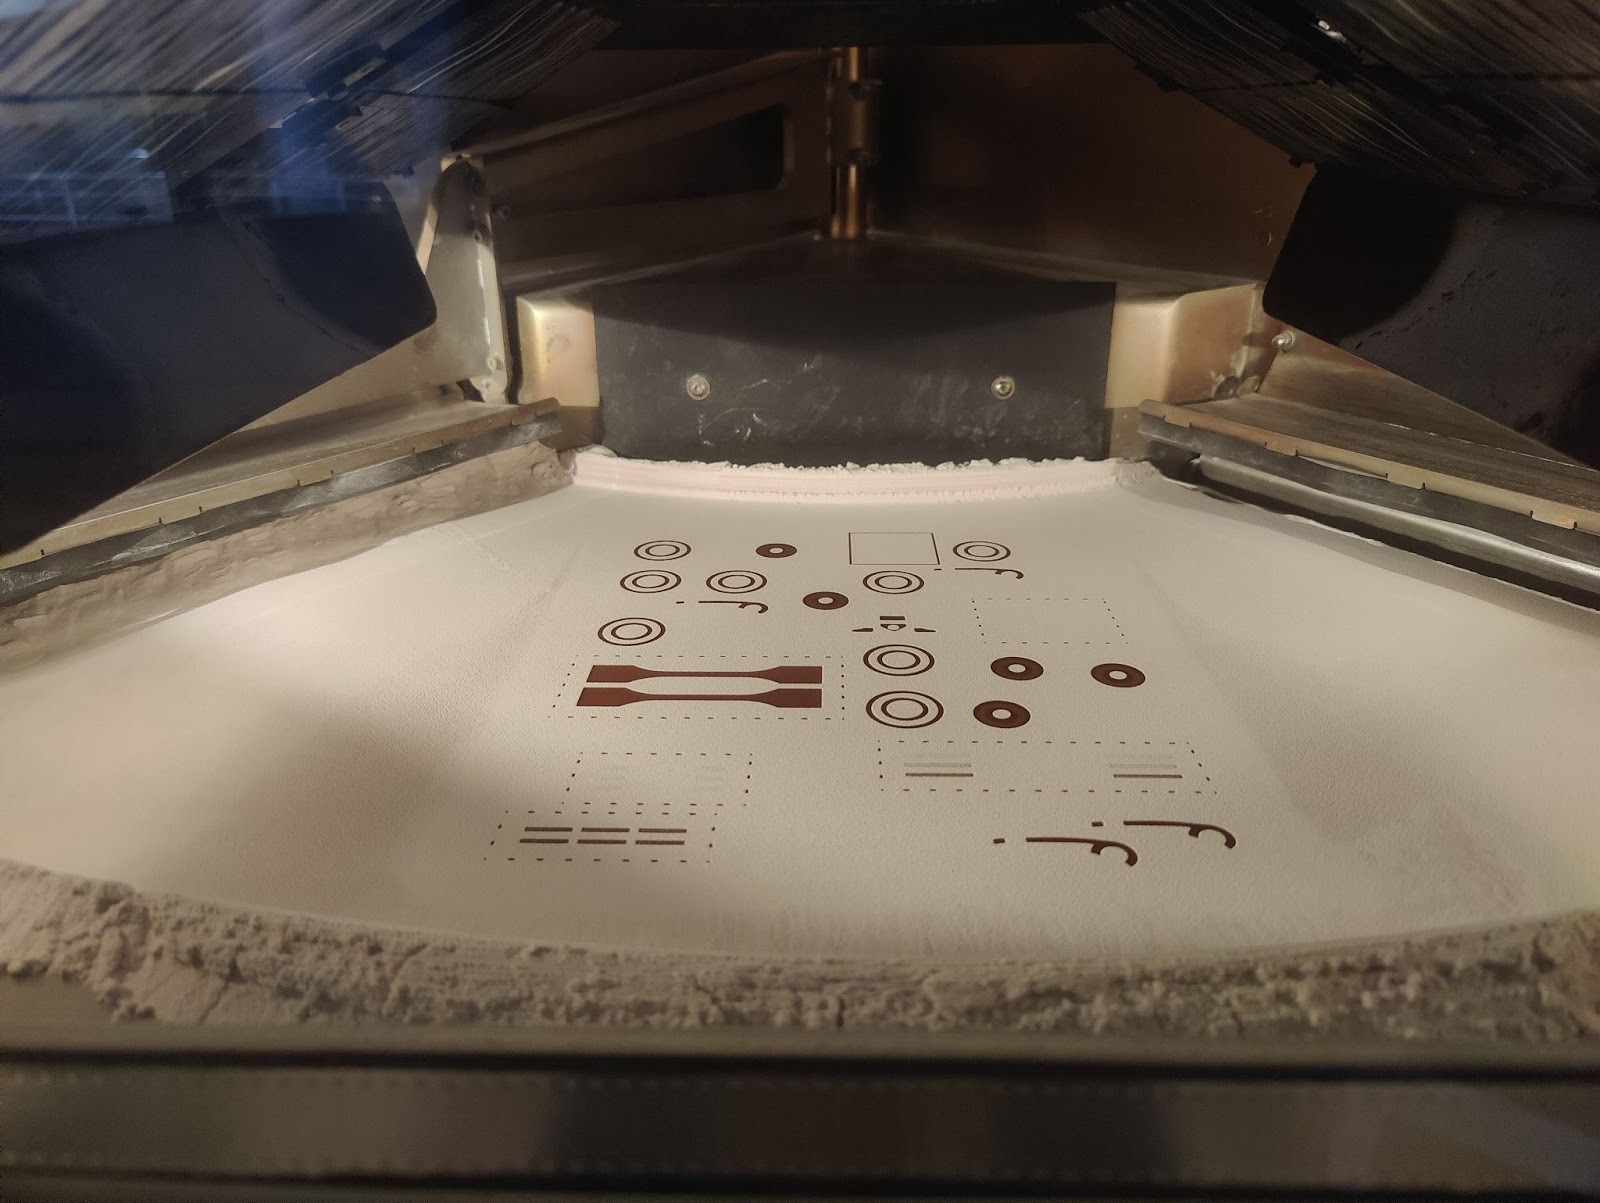 Opracowany materiał antybakteryjny podczas procesu wytwarzania w technologii SLS